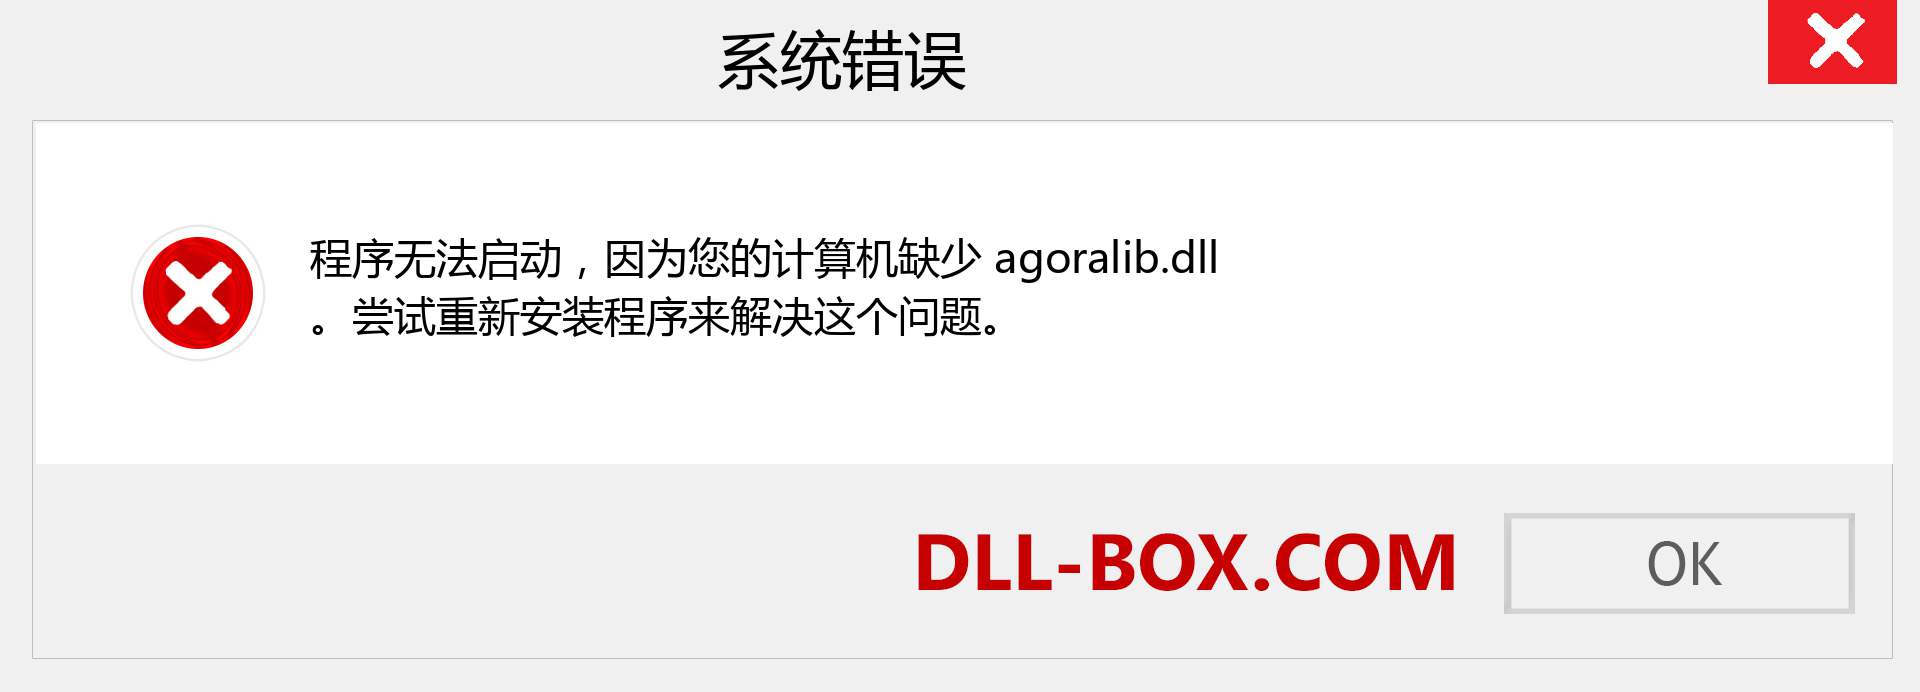 agoralib.dll 文件丢失？。 适用于 Windows 7、8、10 的下载 - 修复 Windows、照片、图像上的 agoralib dll 丢失错误